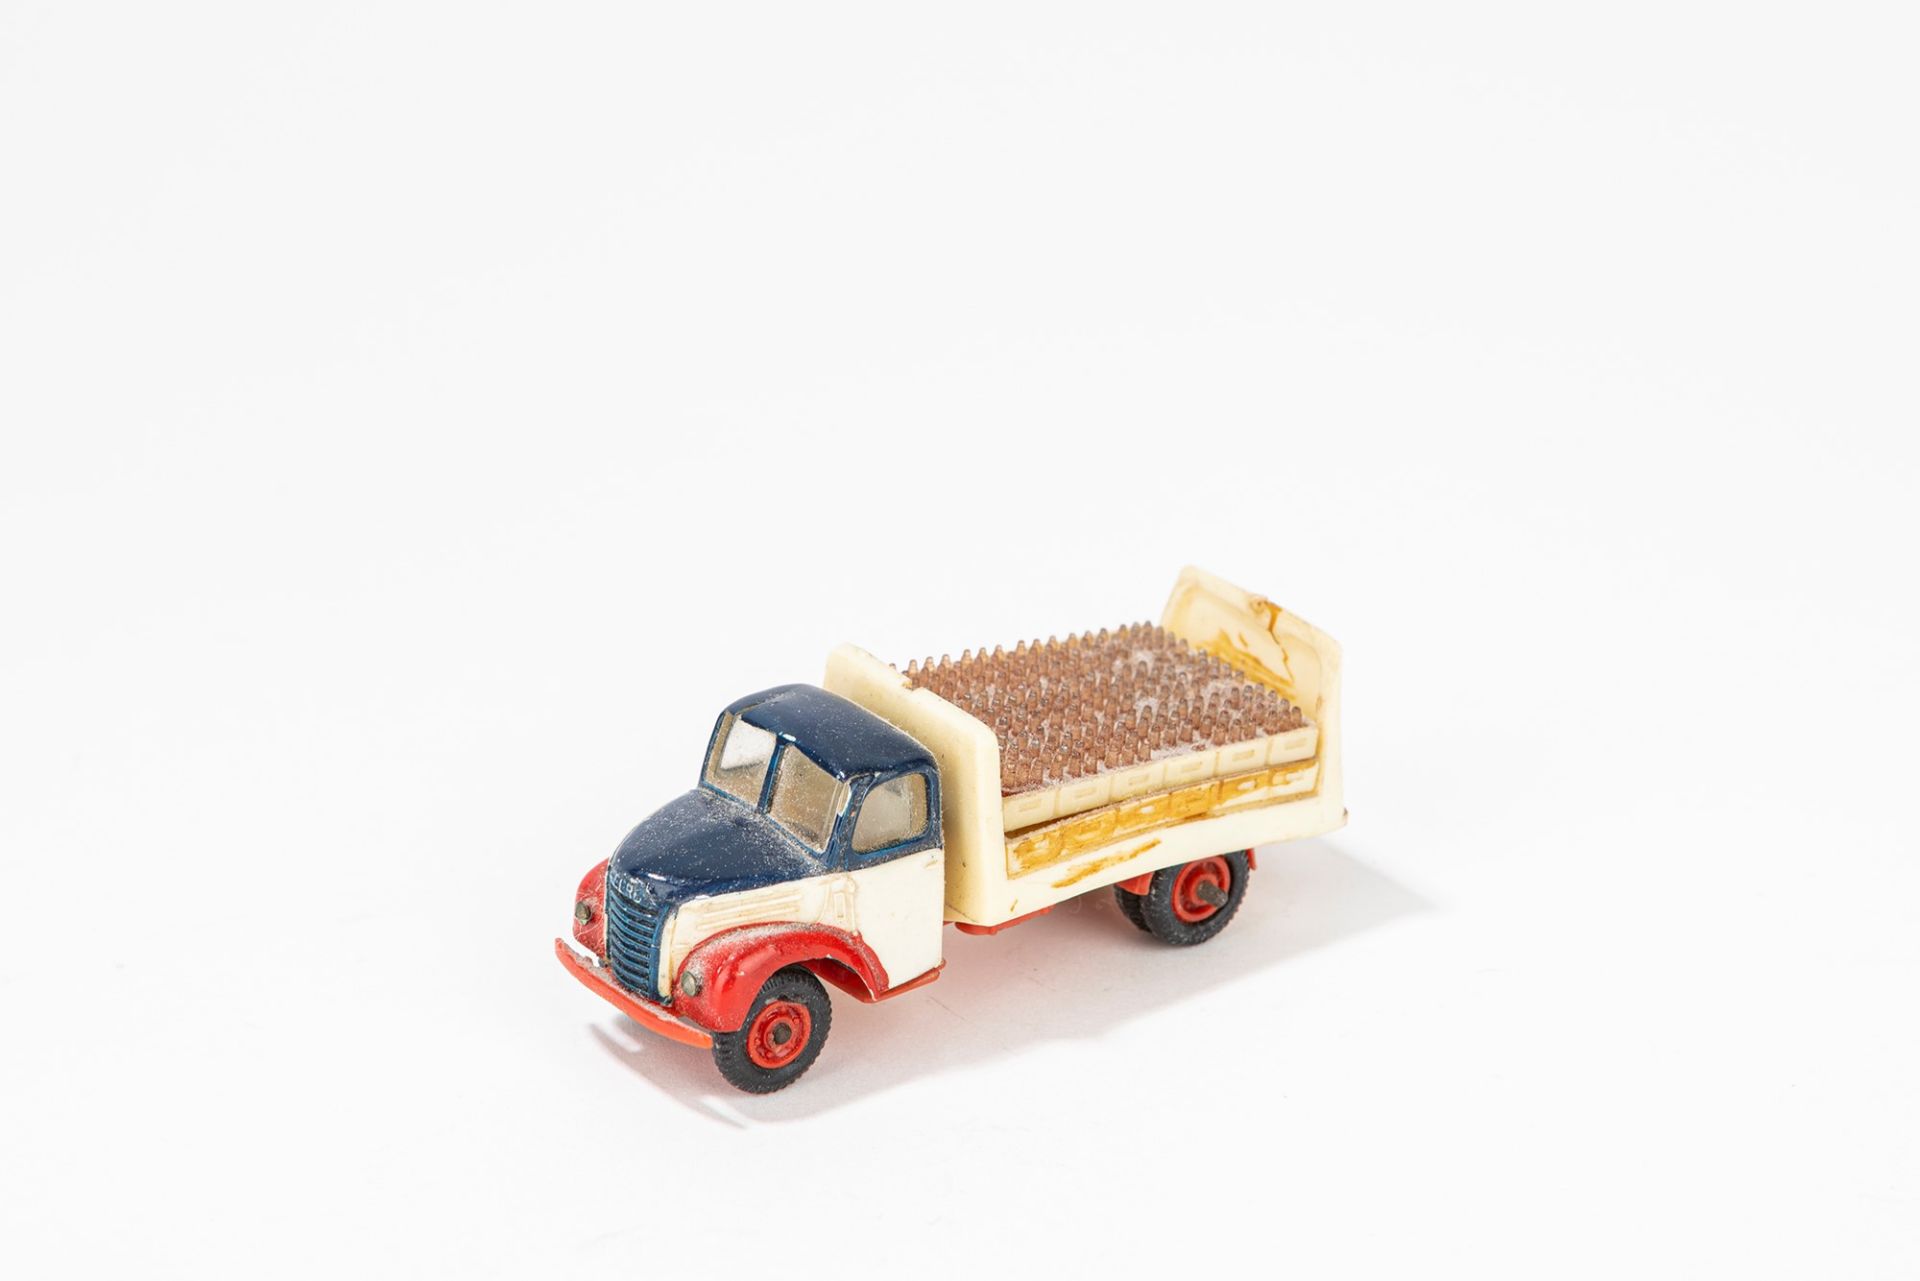 Bedford model truck for transporting drinks